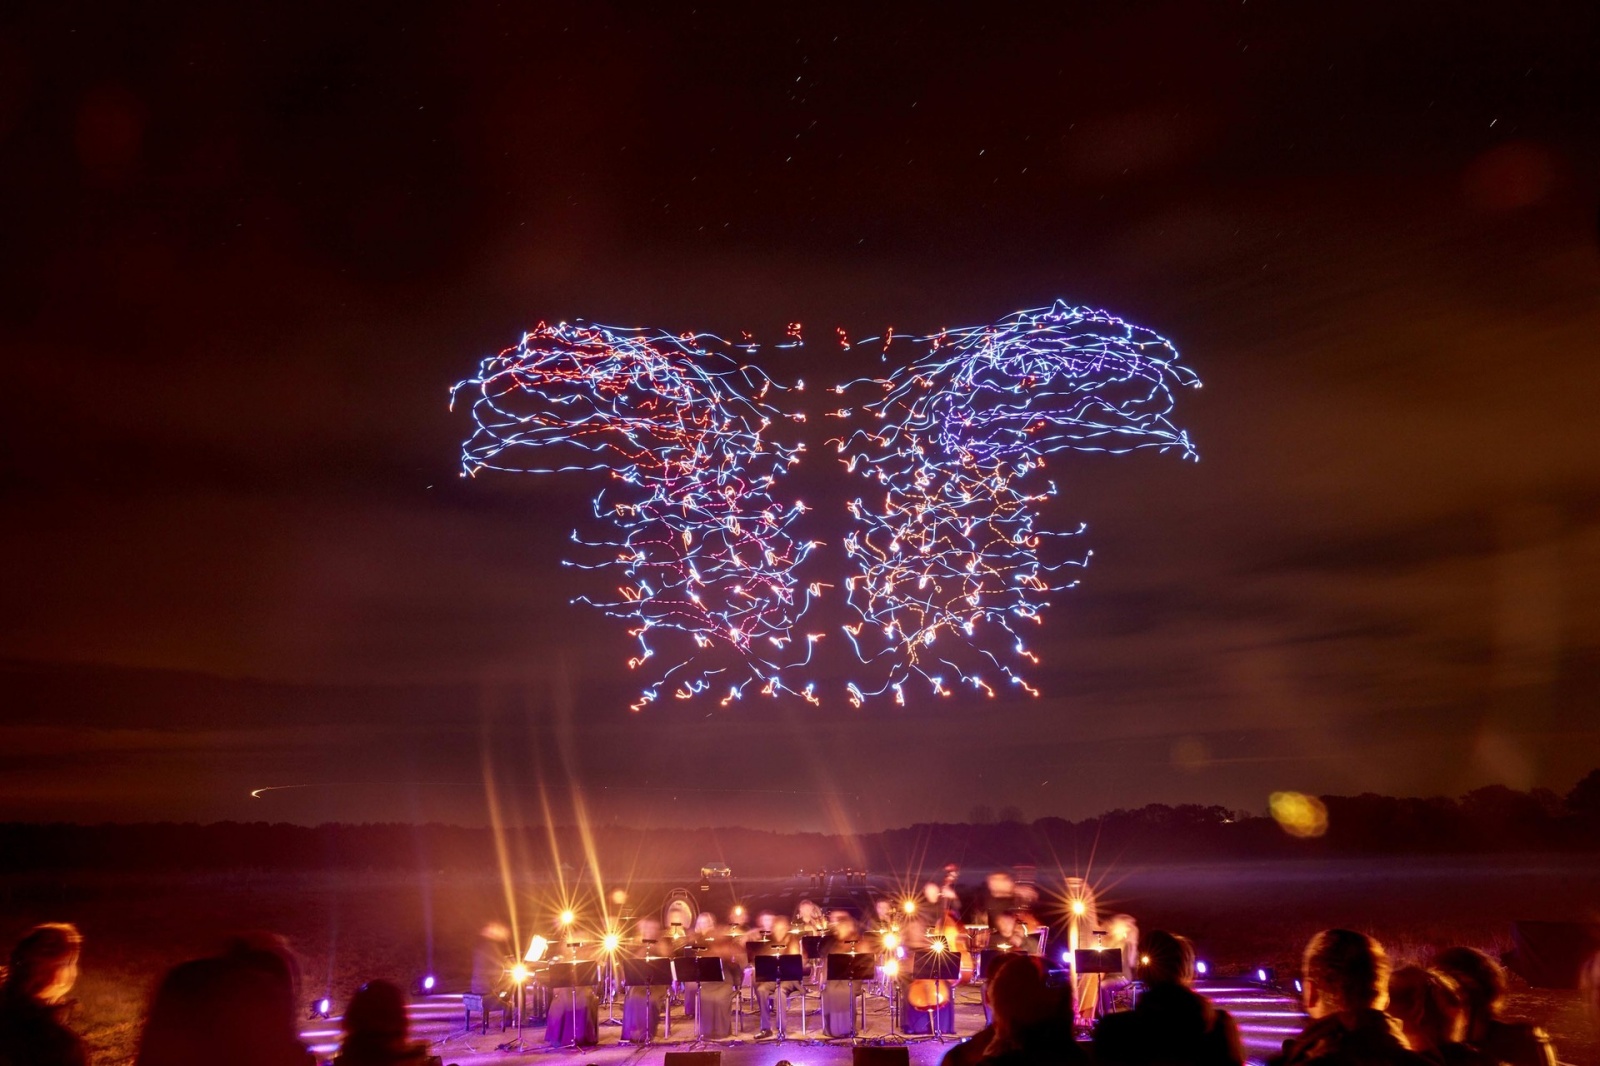 100 танцующих дронов установили новый и единственный в своем роде мировой рекорд: невероятное световое шоу - 1